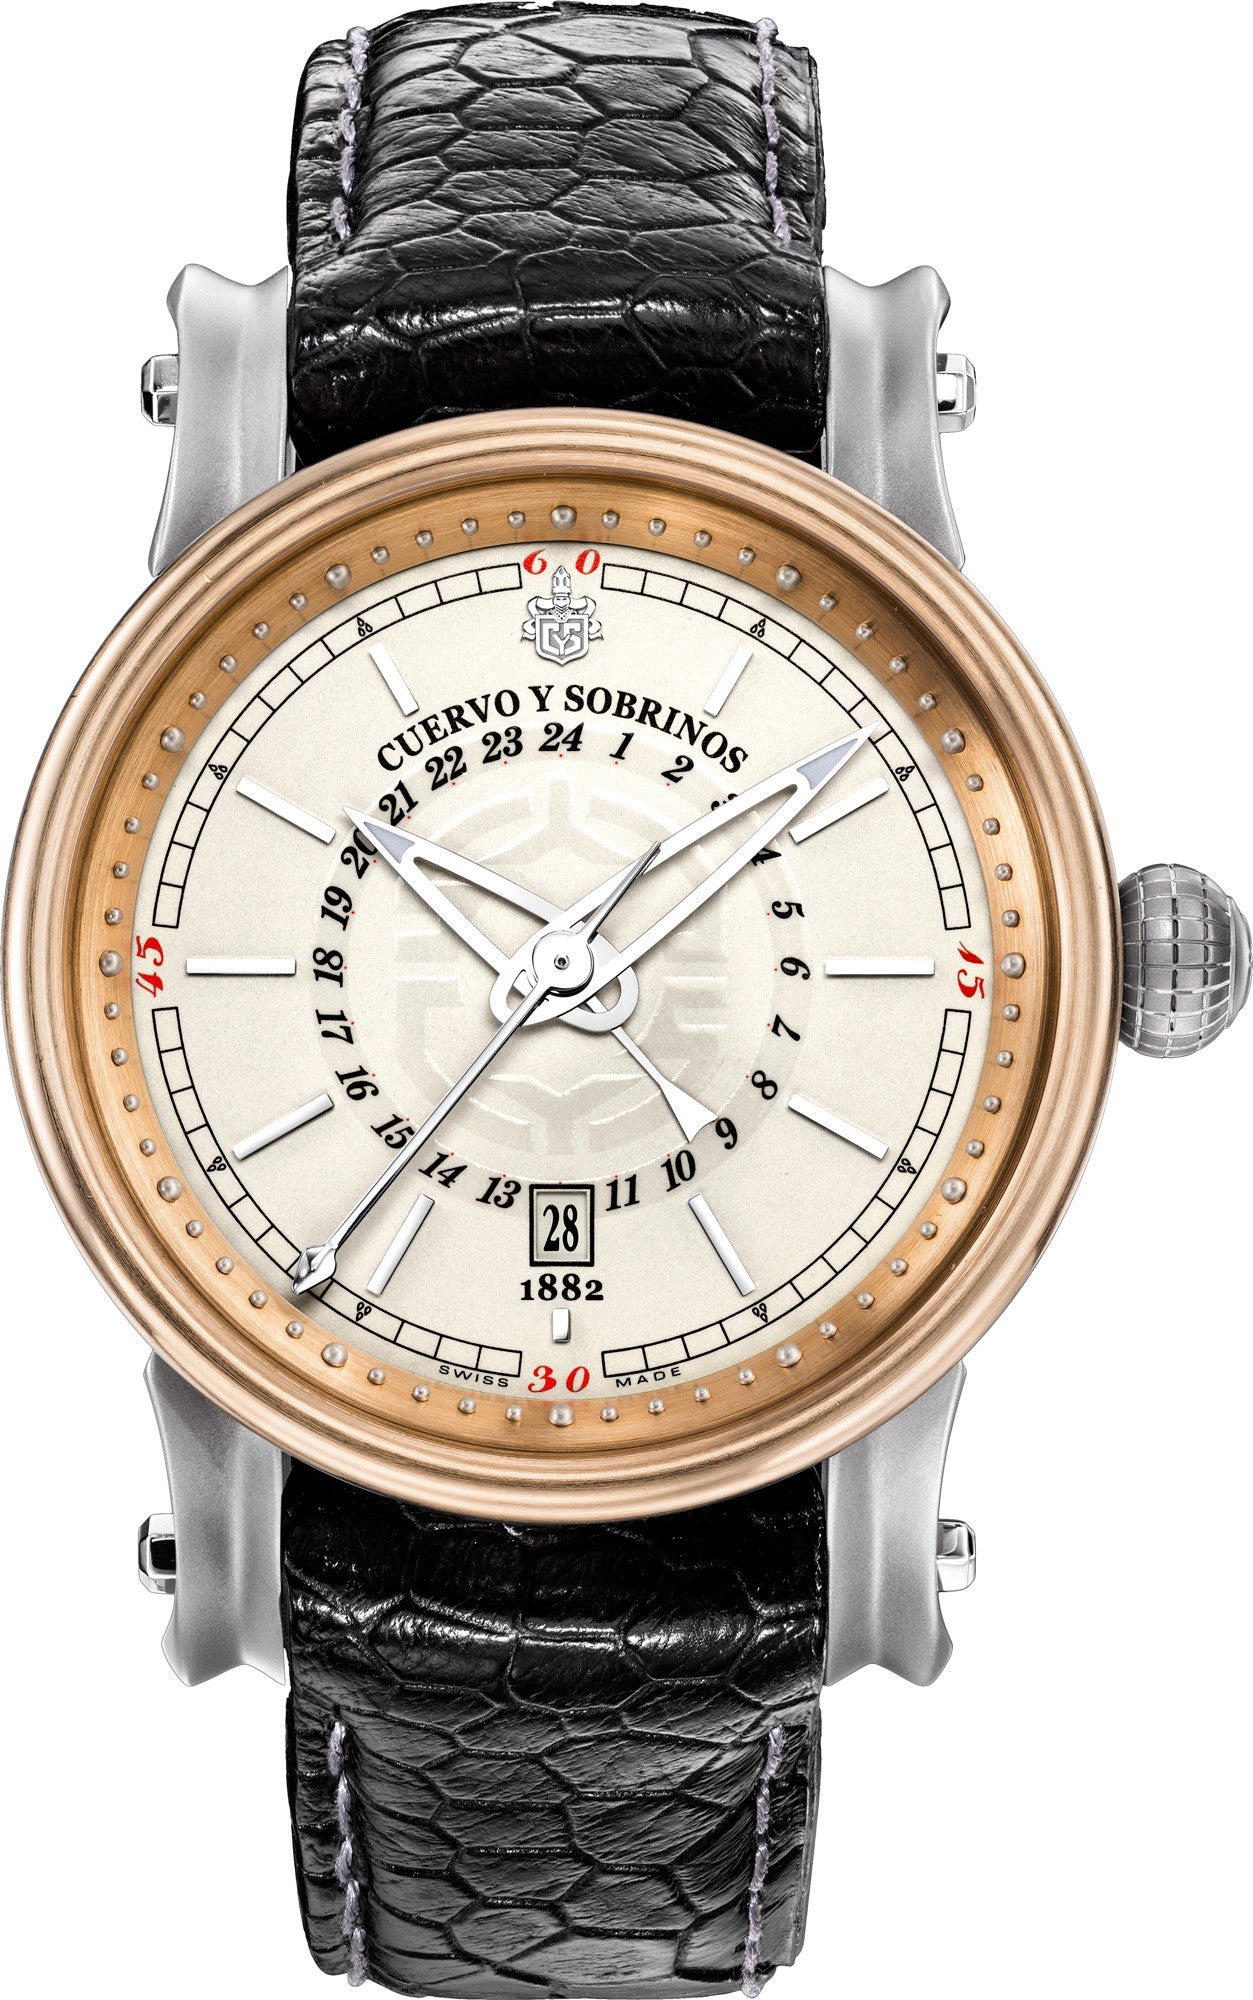 Cuervo y Sobrinos Watch Torpedo Pirata GMT Bronze 3052.5WGMT Watch ...